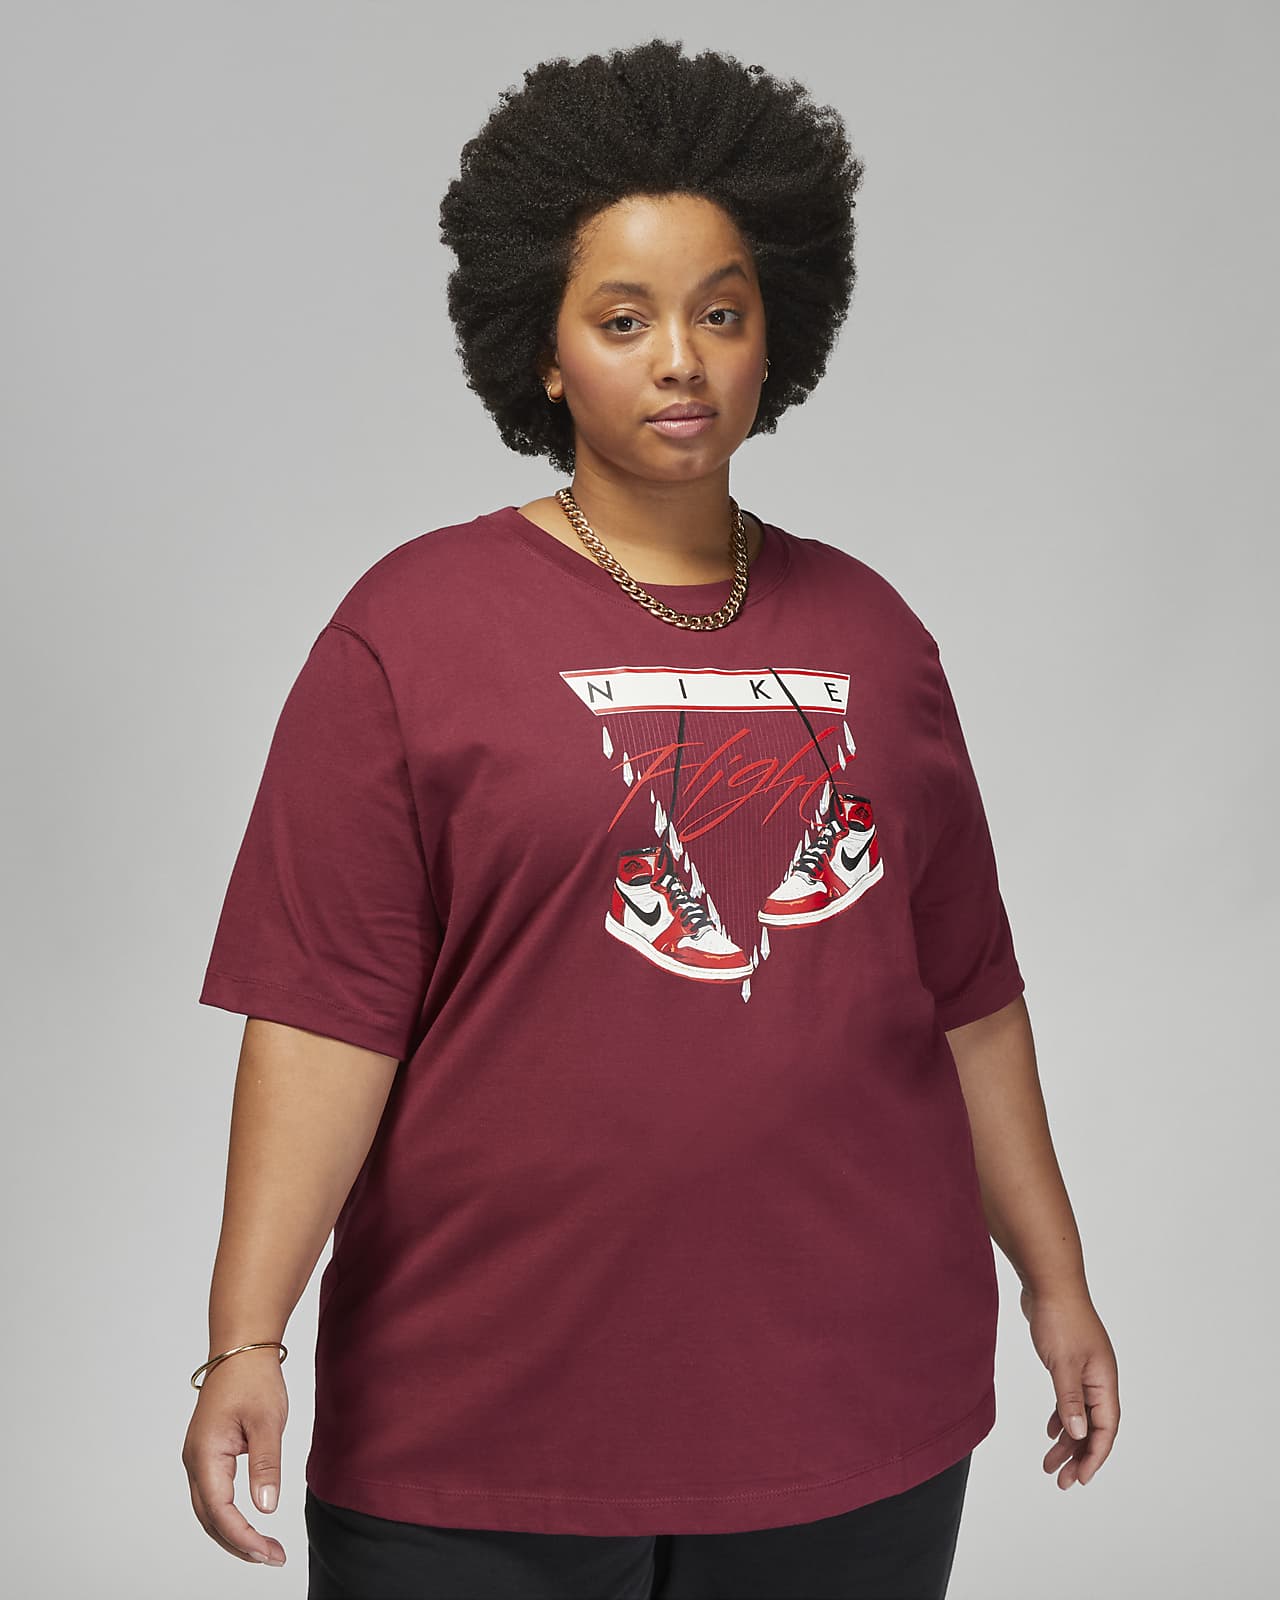 Women's Plus Size Running Tops & T-Shirts. Nike LU